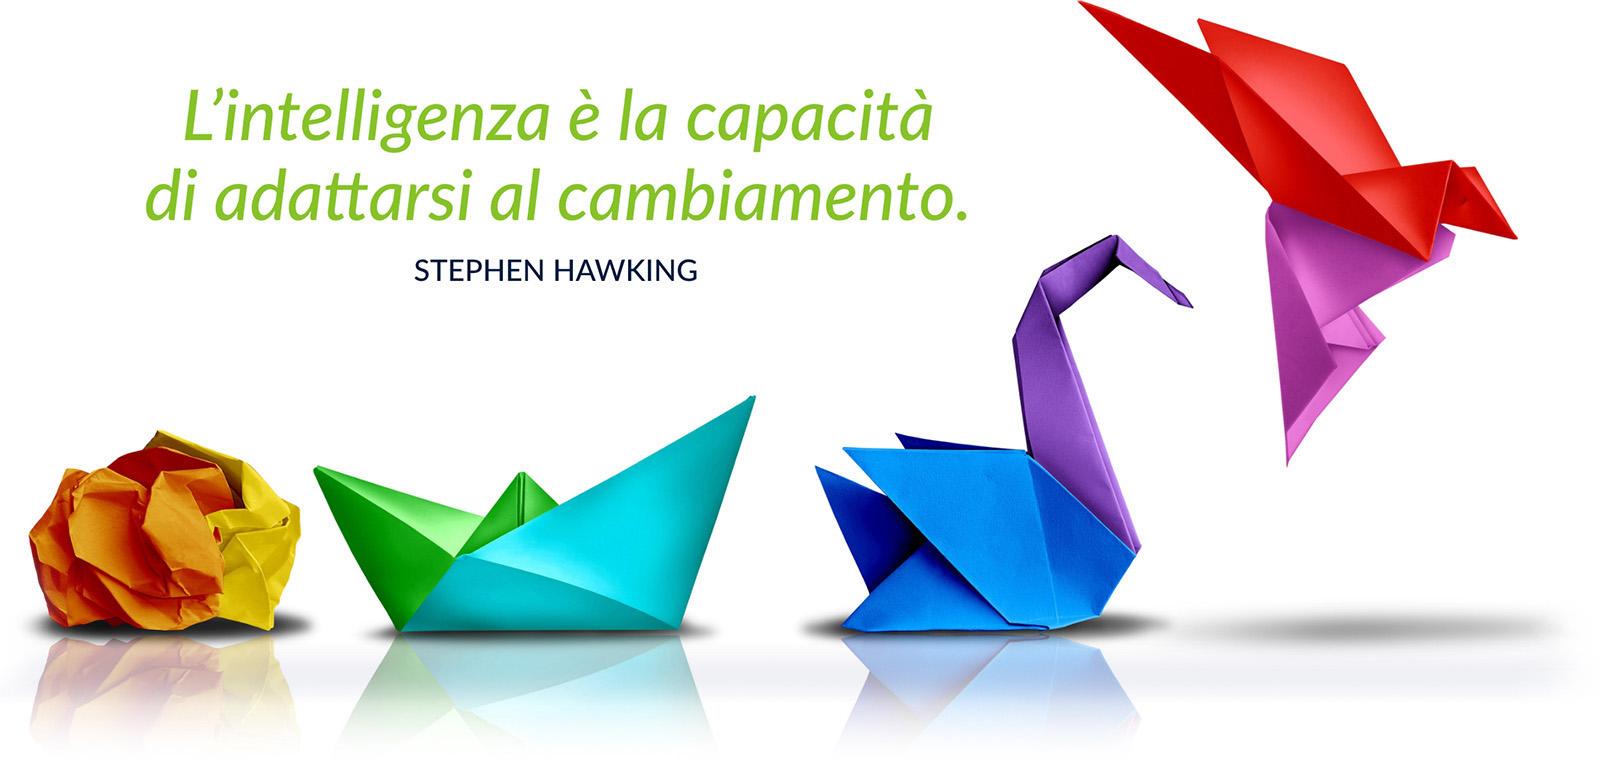 L'intelligenza è la capacità di adattarsi al cambiamento. Stephen Hawking